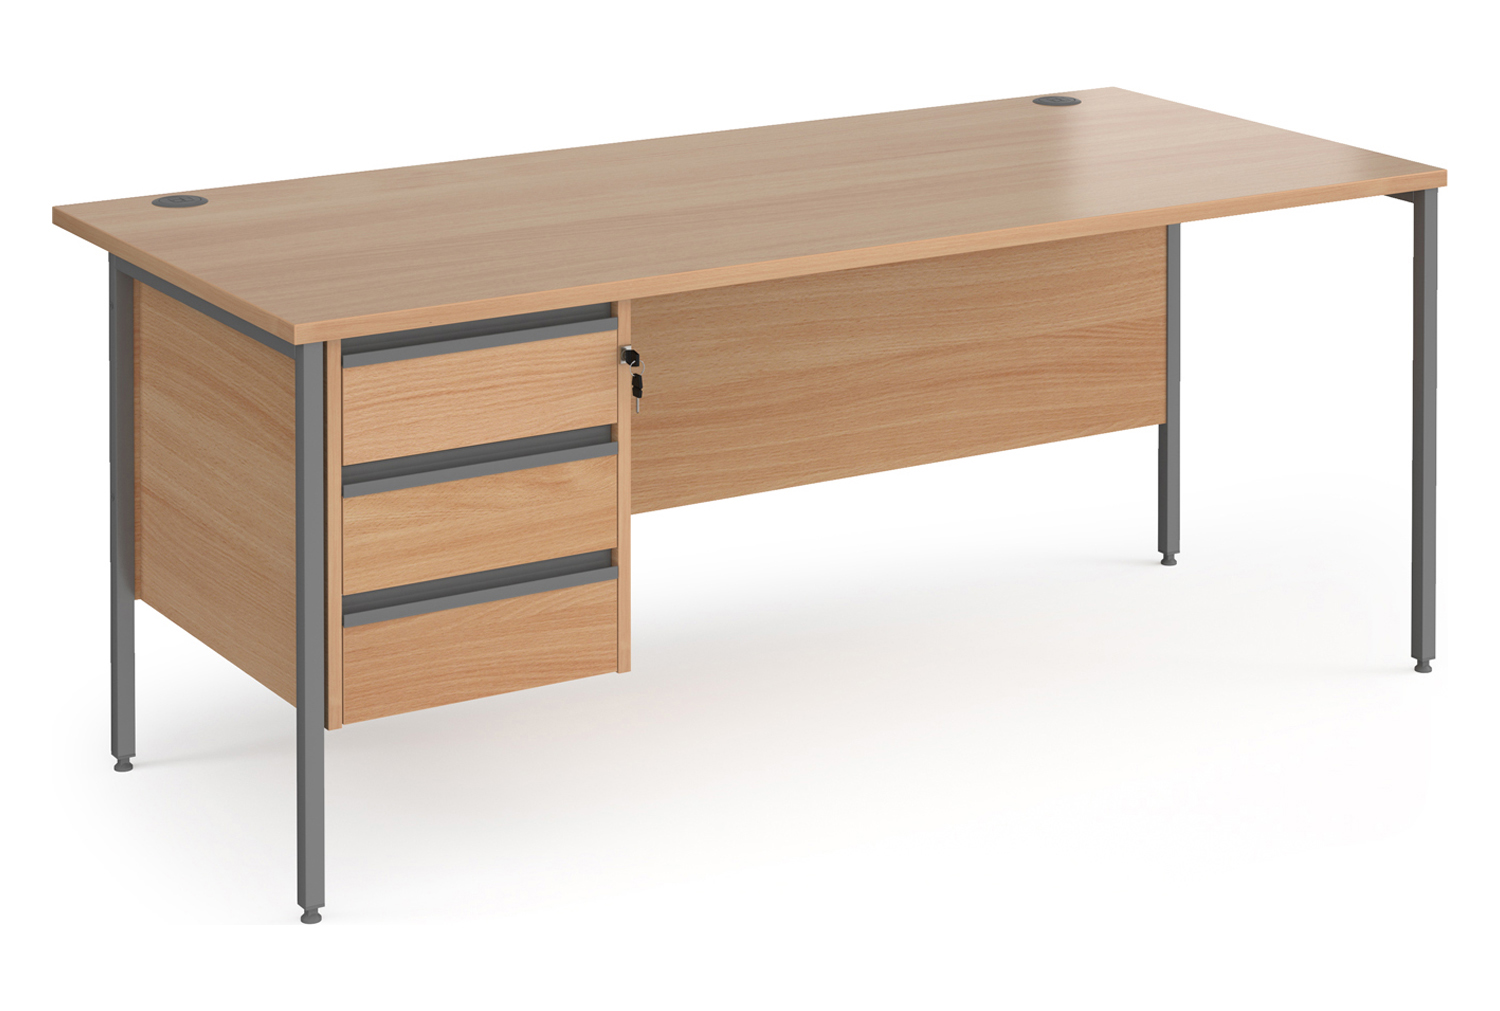 Value Line Classic+ Rectangular H-Leg Office Desk 3 Drawers (Graphite Leg), 180wx80dx73h (cm), Beech, Fully Installed